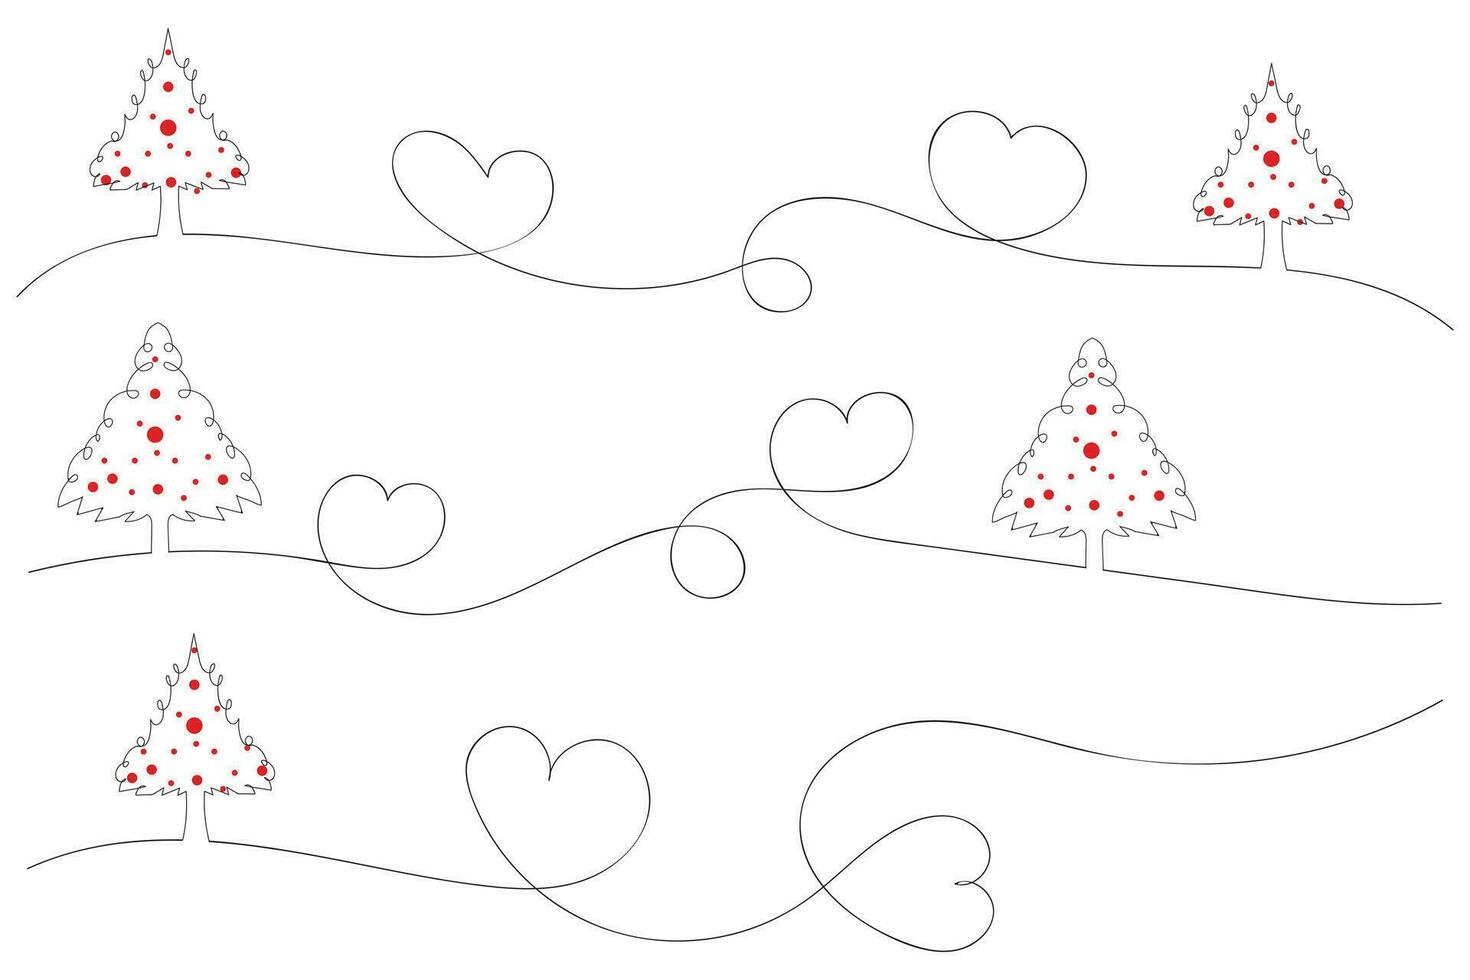 mano dibujado Delgado continuo línea Navidad árbol con corazones símbolo vector, uno línea pino abeto árbol romántico relación amor firmar, minimalista contorno soltero línea Arte fiesta tarjetas decoraciones vector